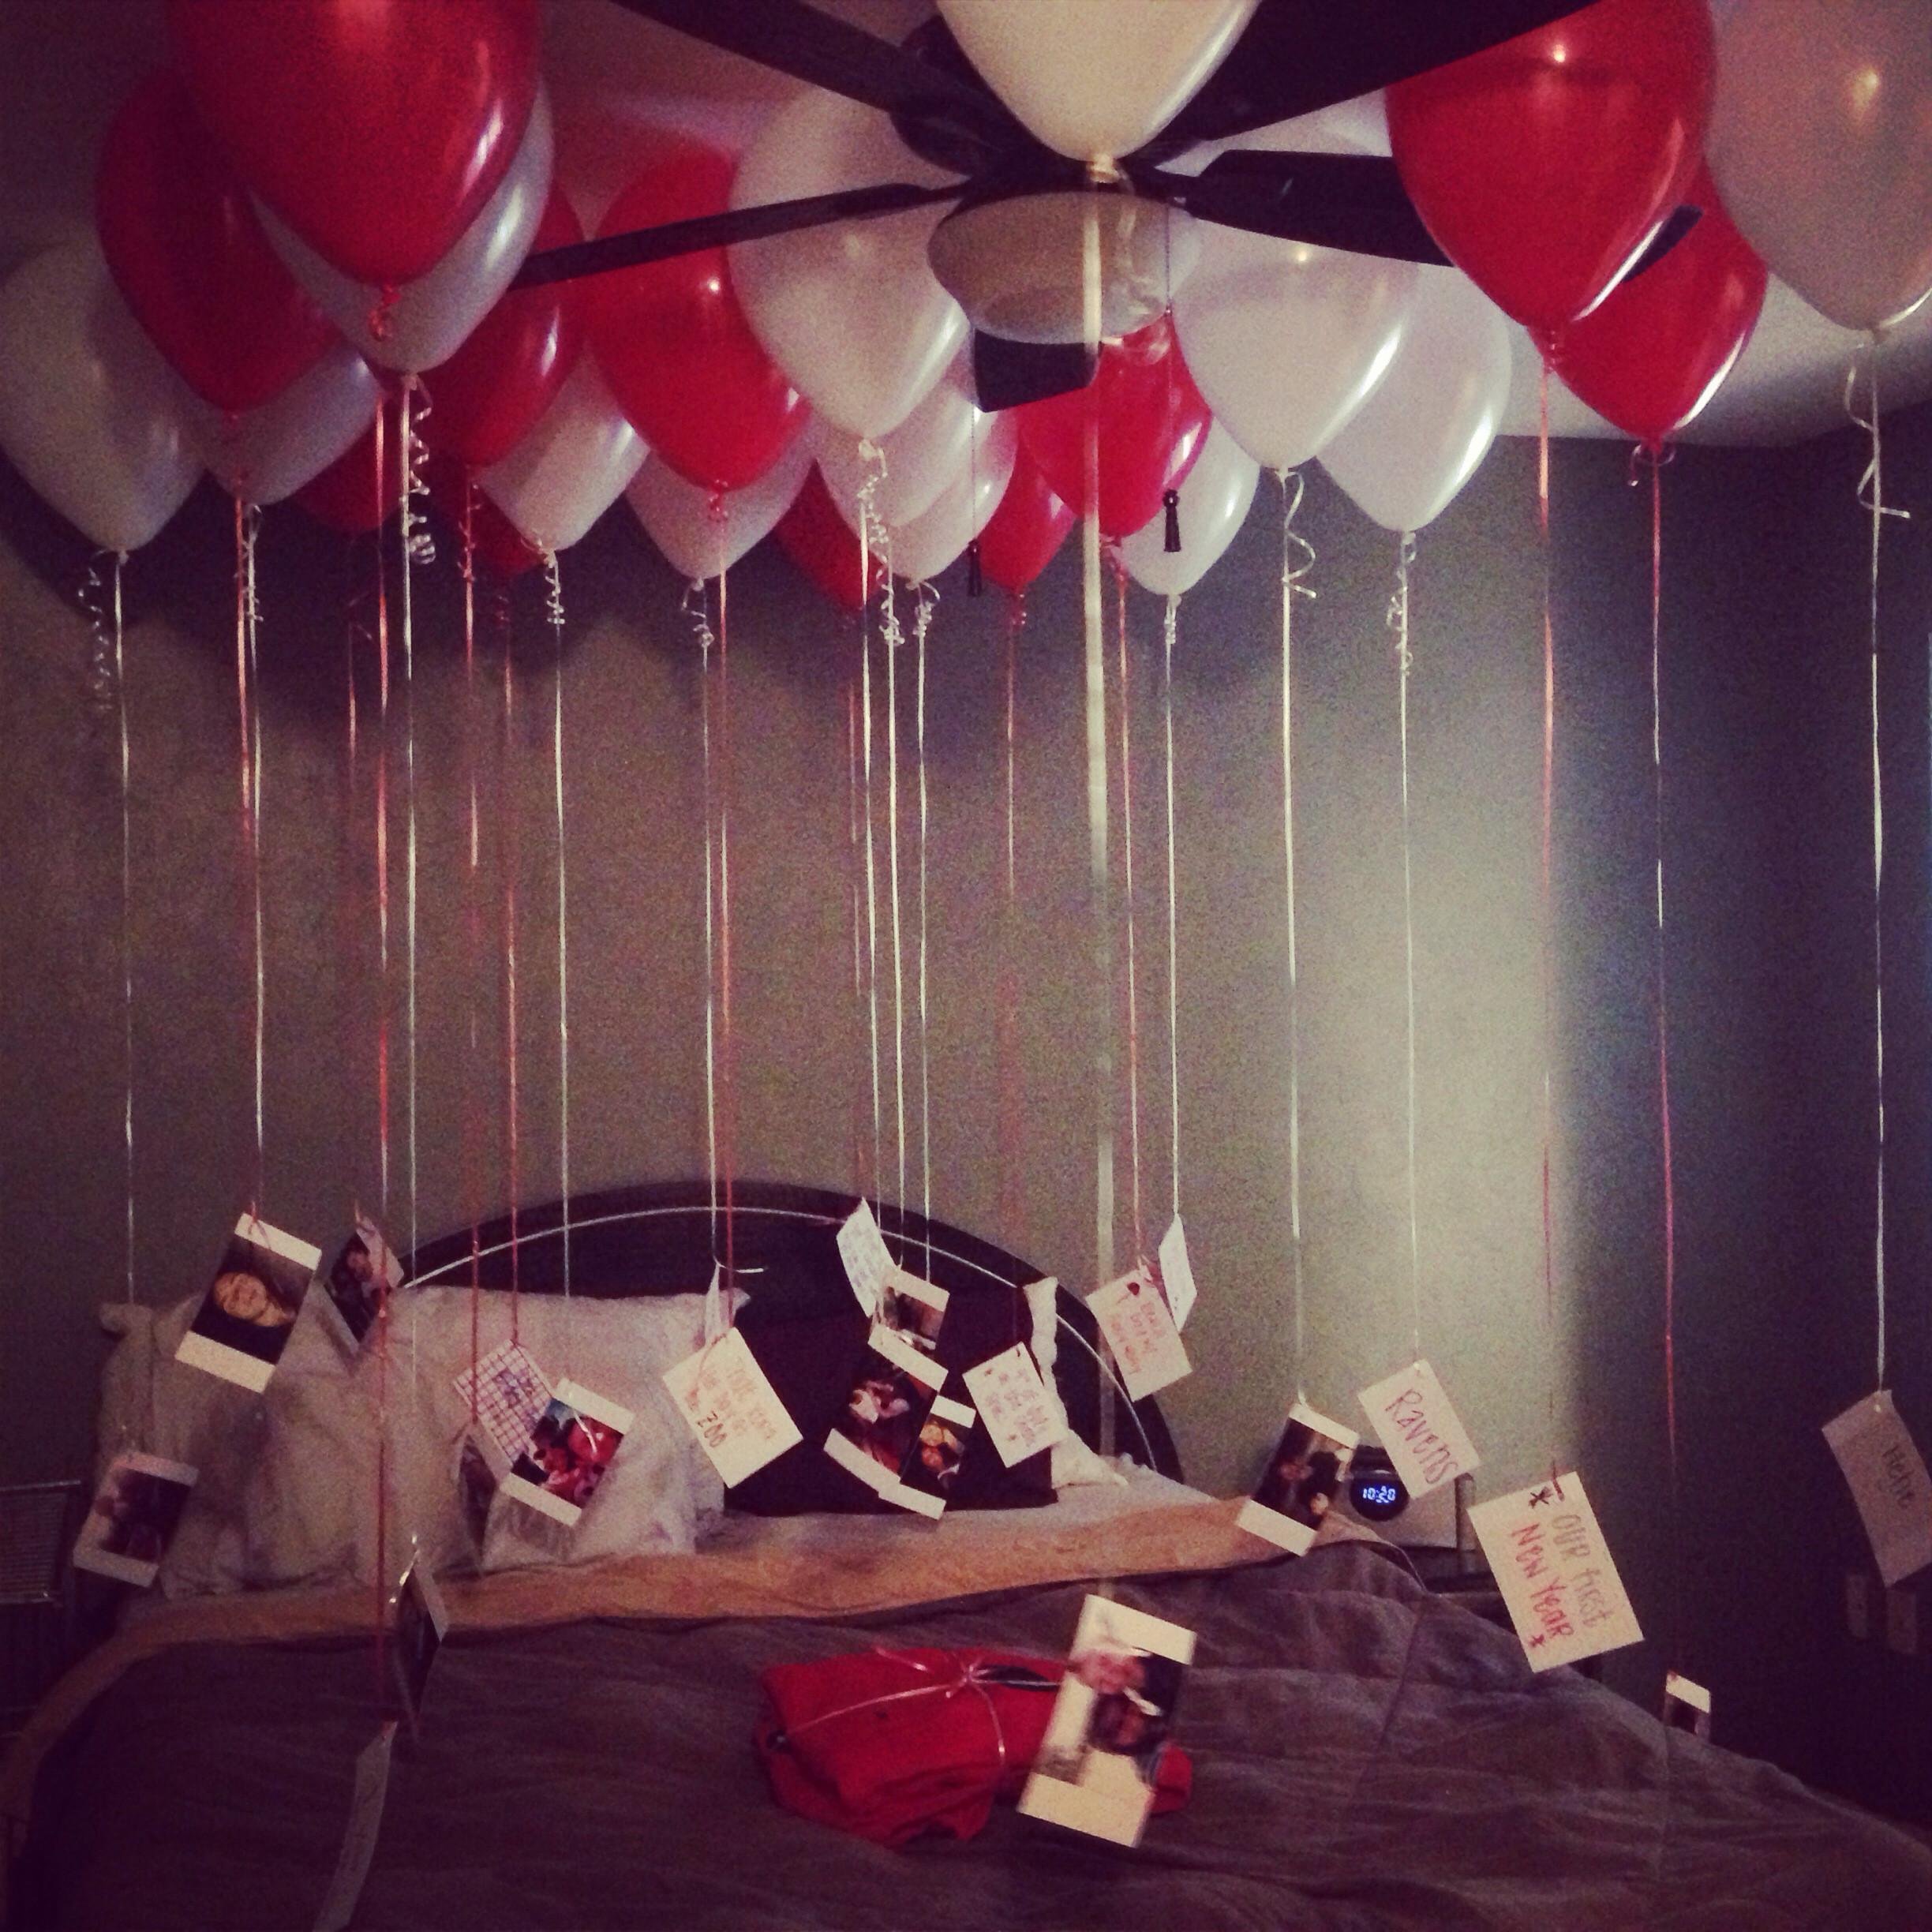 Фотографии сюрприза. Воздушные шары в комнате. Романтический подарок девушке. Украсить комнату шариками. Девушка с сюрпризом.